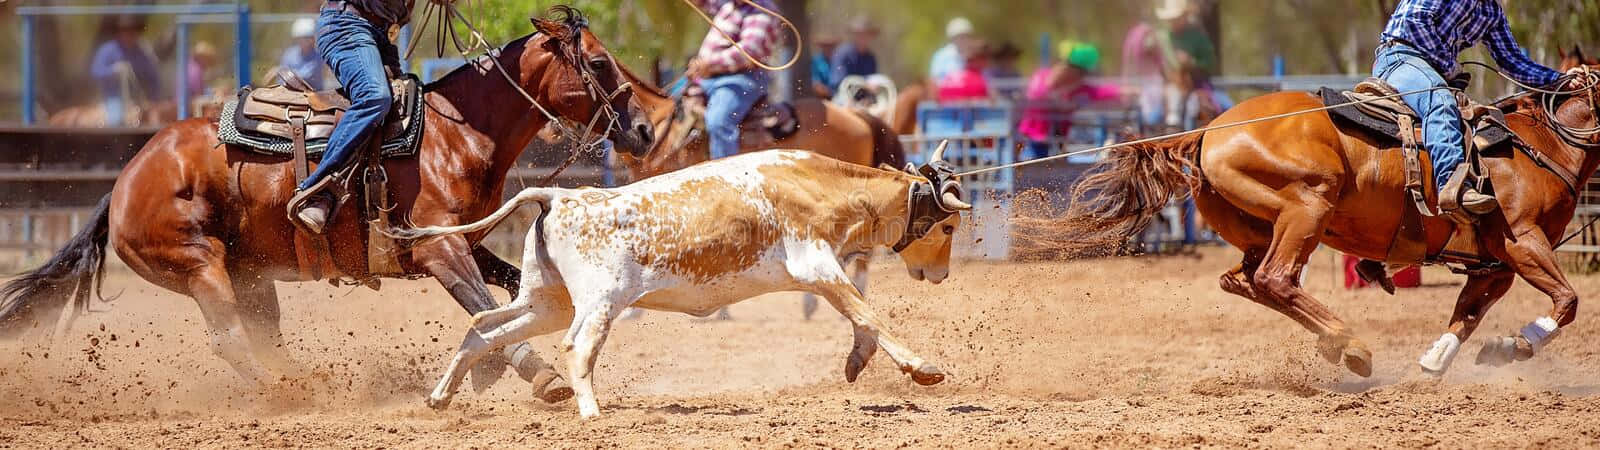 To cowboys er at rope en ko i en rodeo. Wallpaper